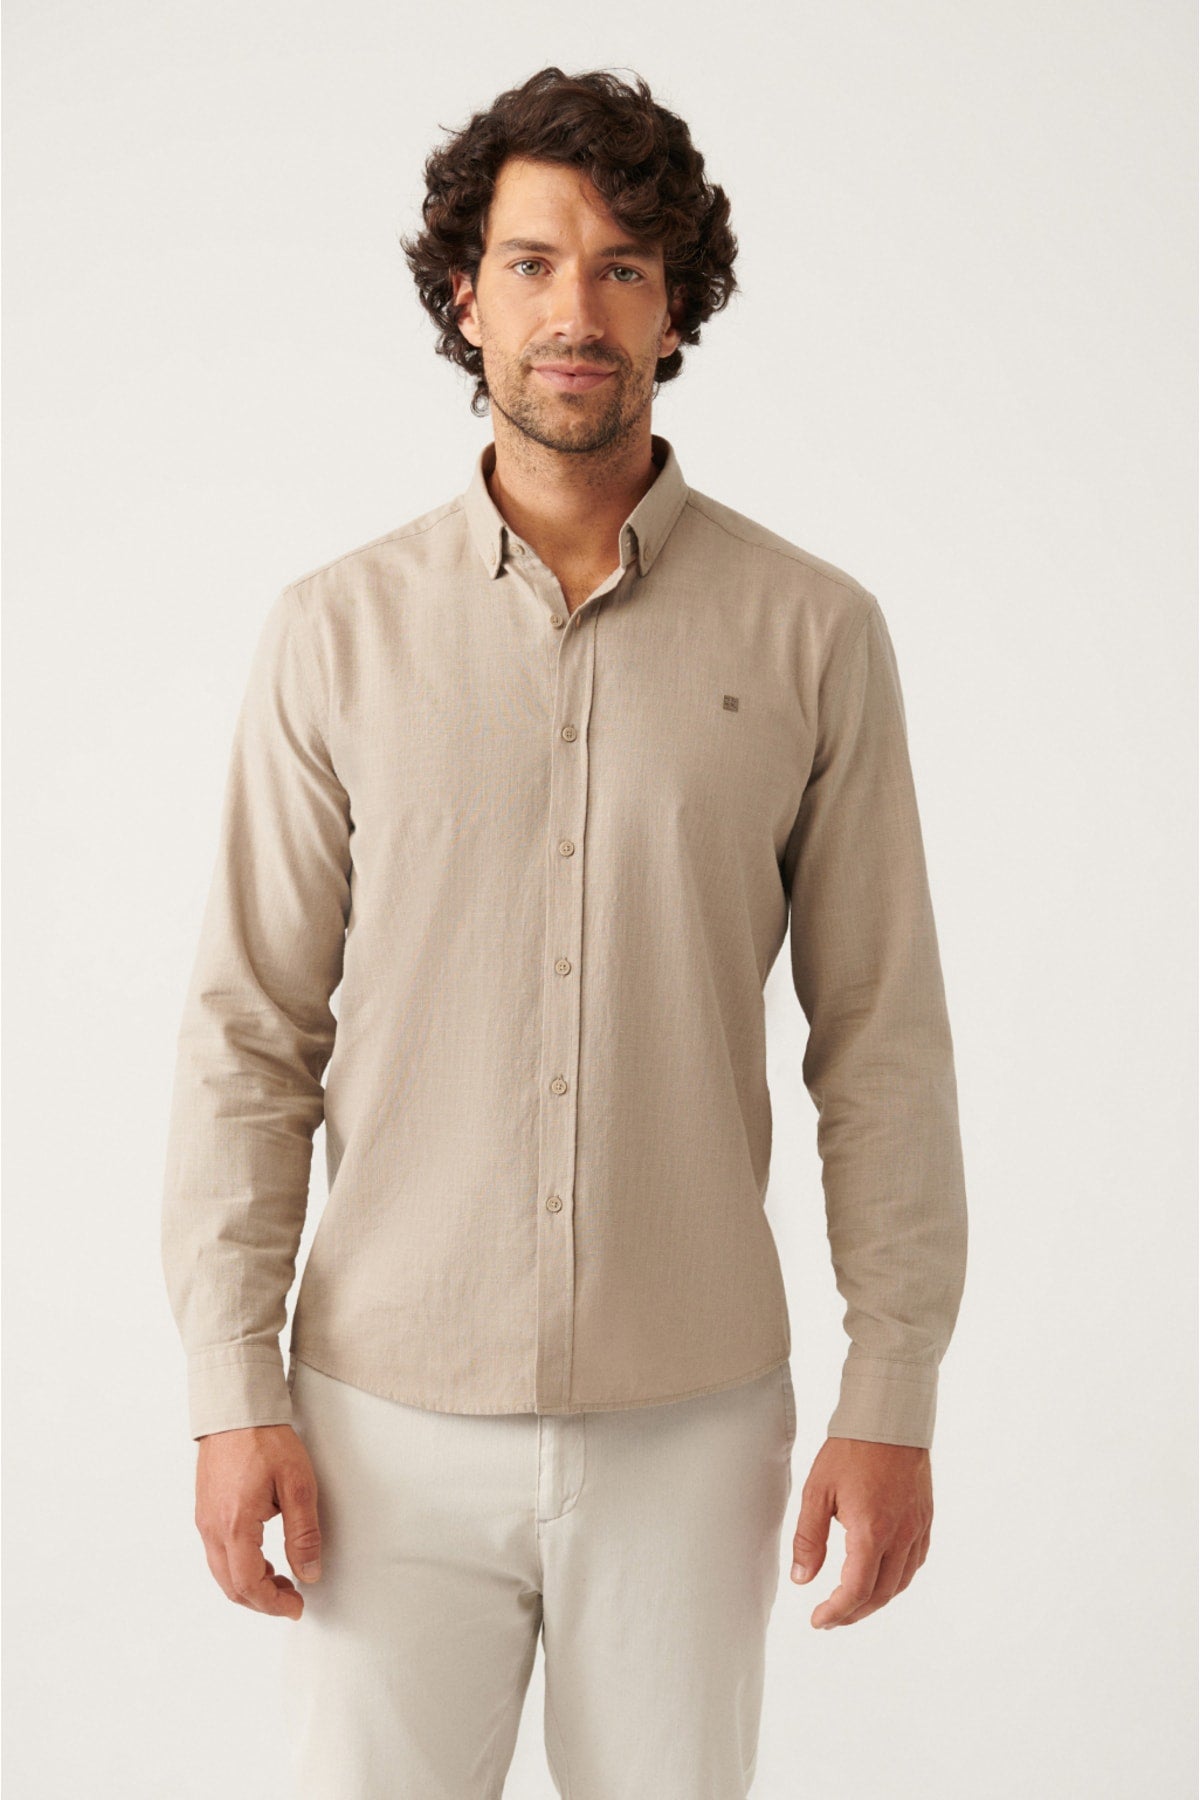 Mink buttoned collar comfort fit 100 %cotton linen textured shirt E002141